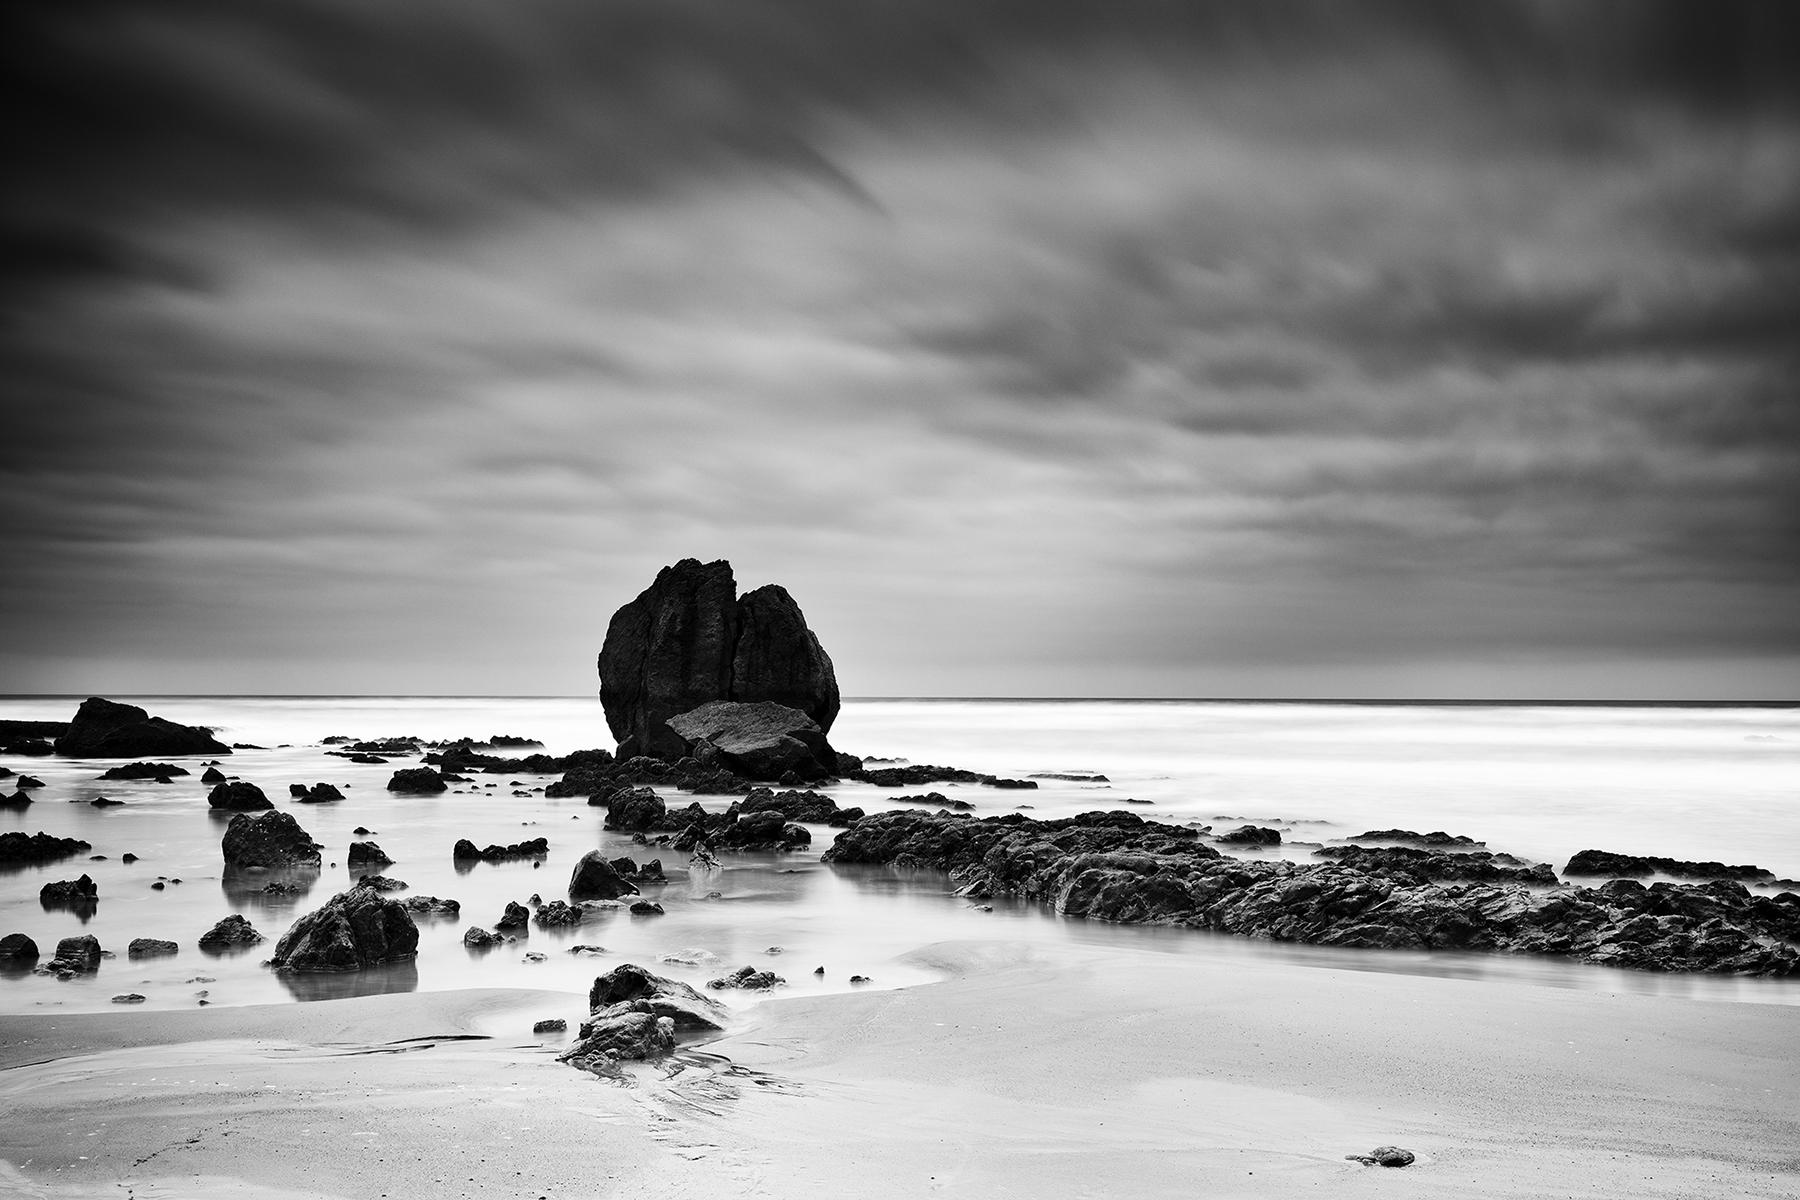 Landscape Photograph Gerald Berghammer - Rochers sur le SHORE, plage, Côte Atlantique, France, paysage en noir et blanc 